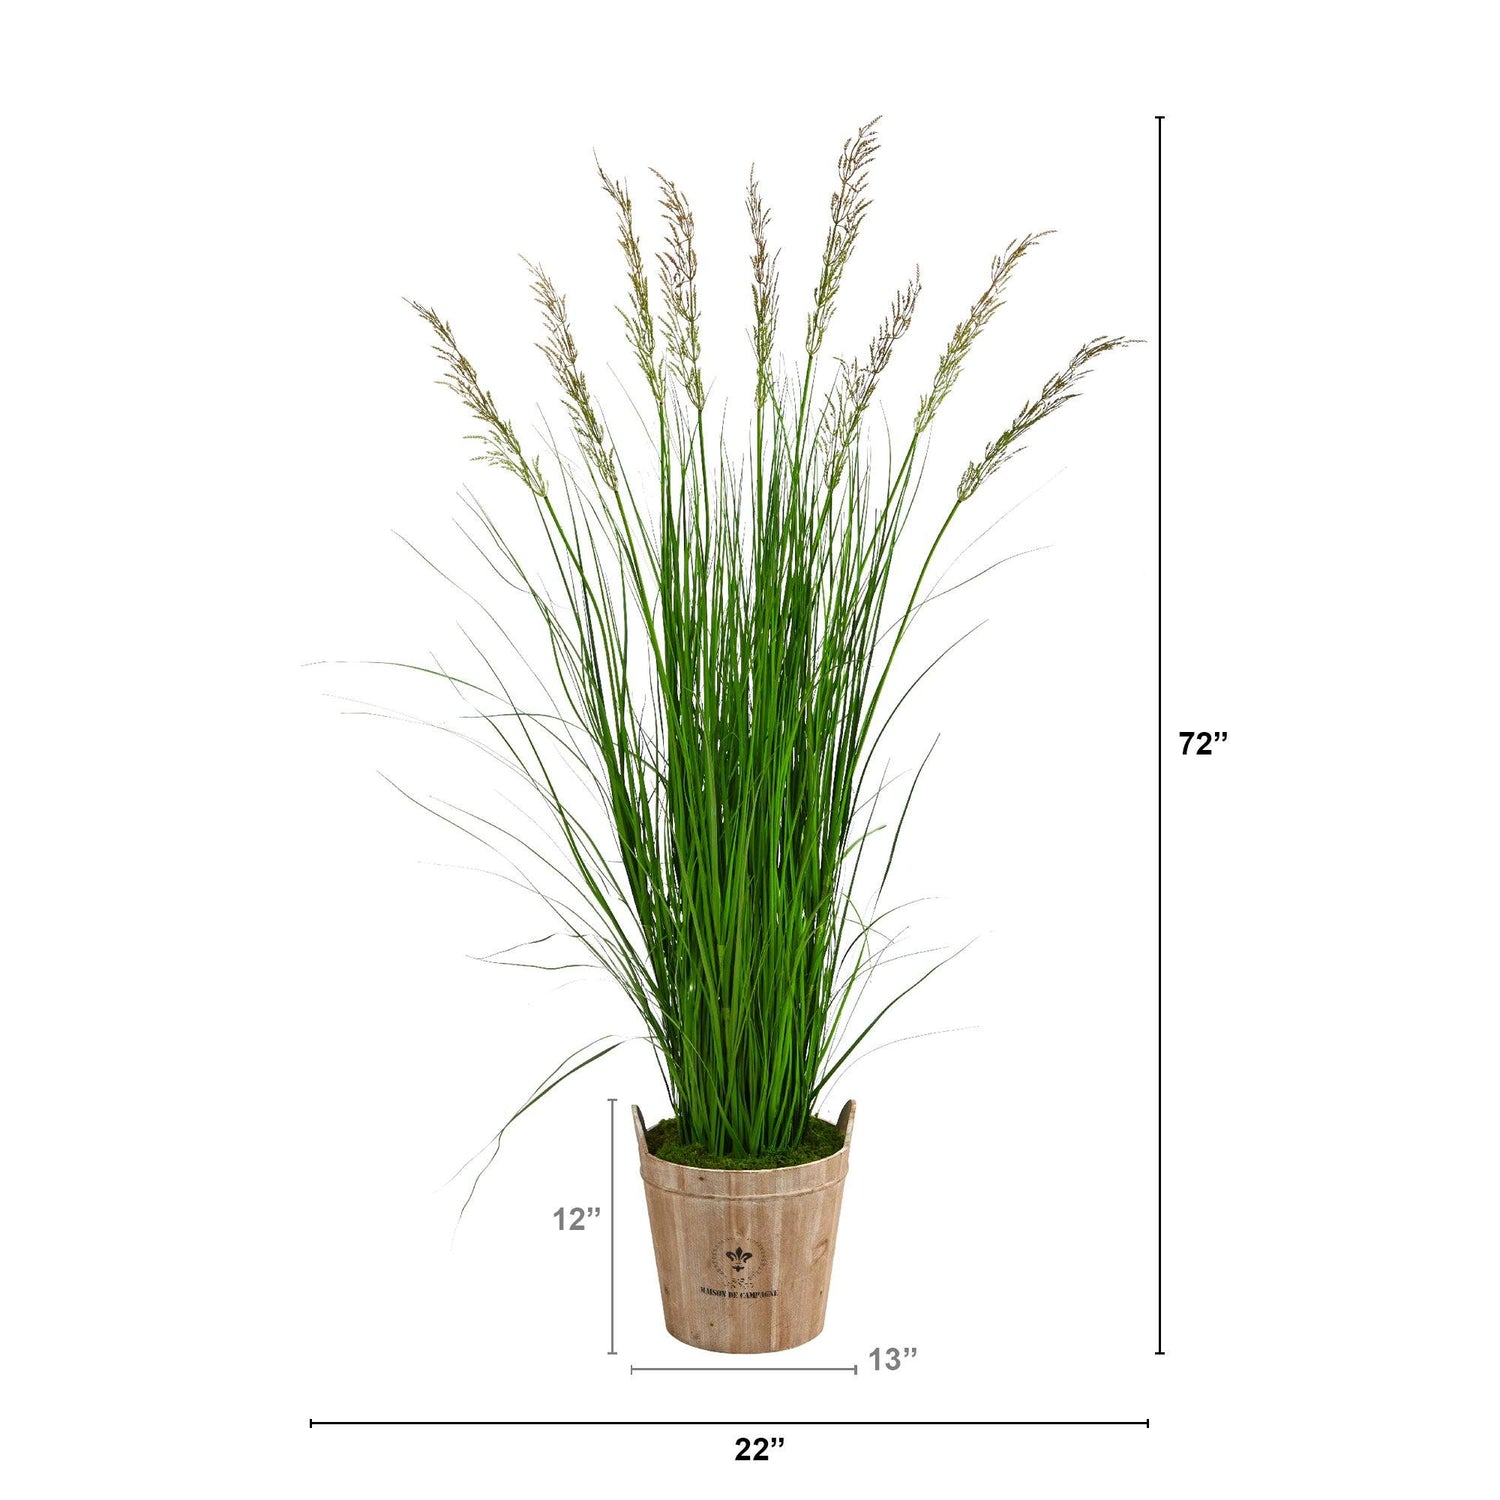 6’ Grass Artificial Plant in Farmhouse Planter